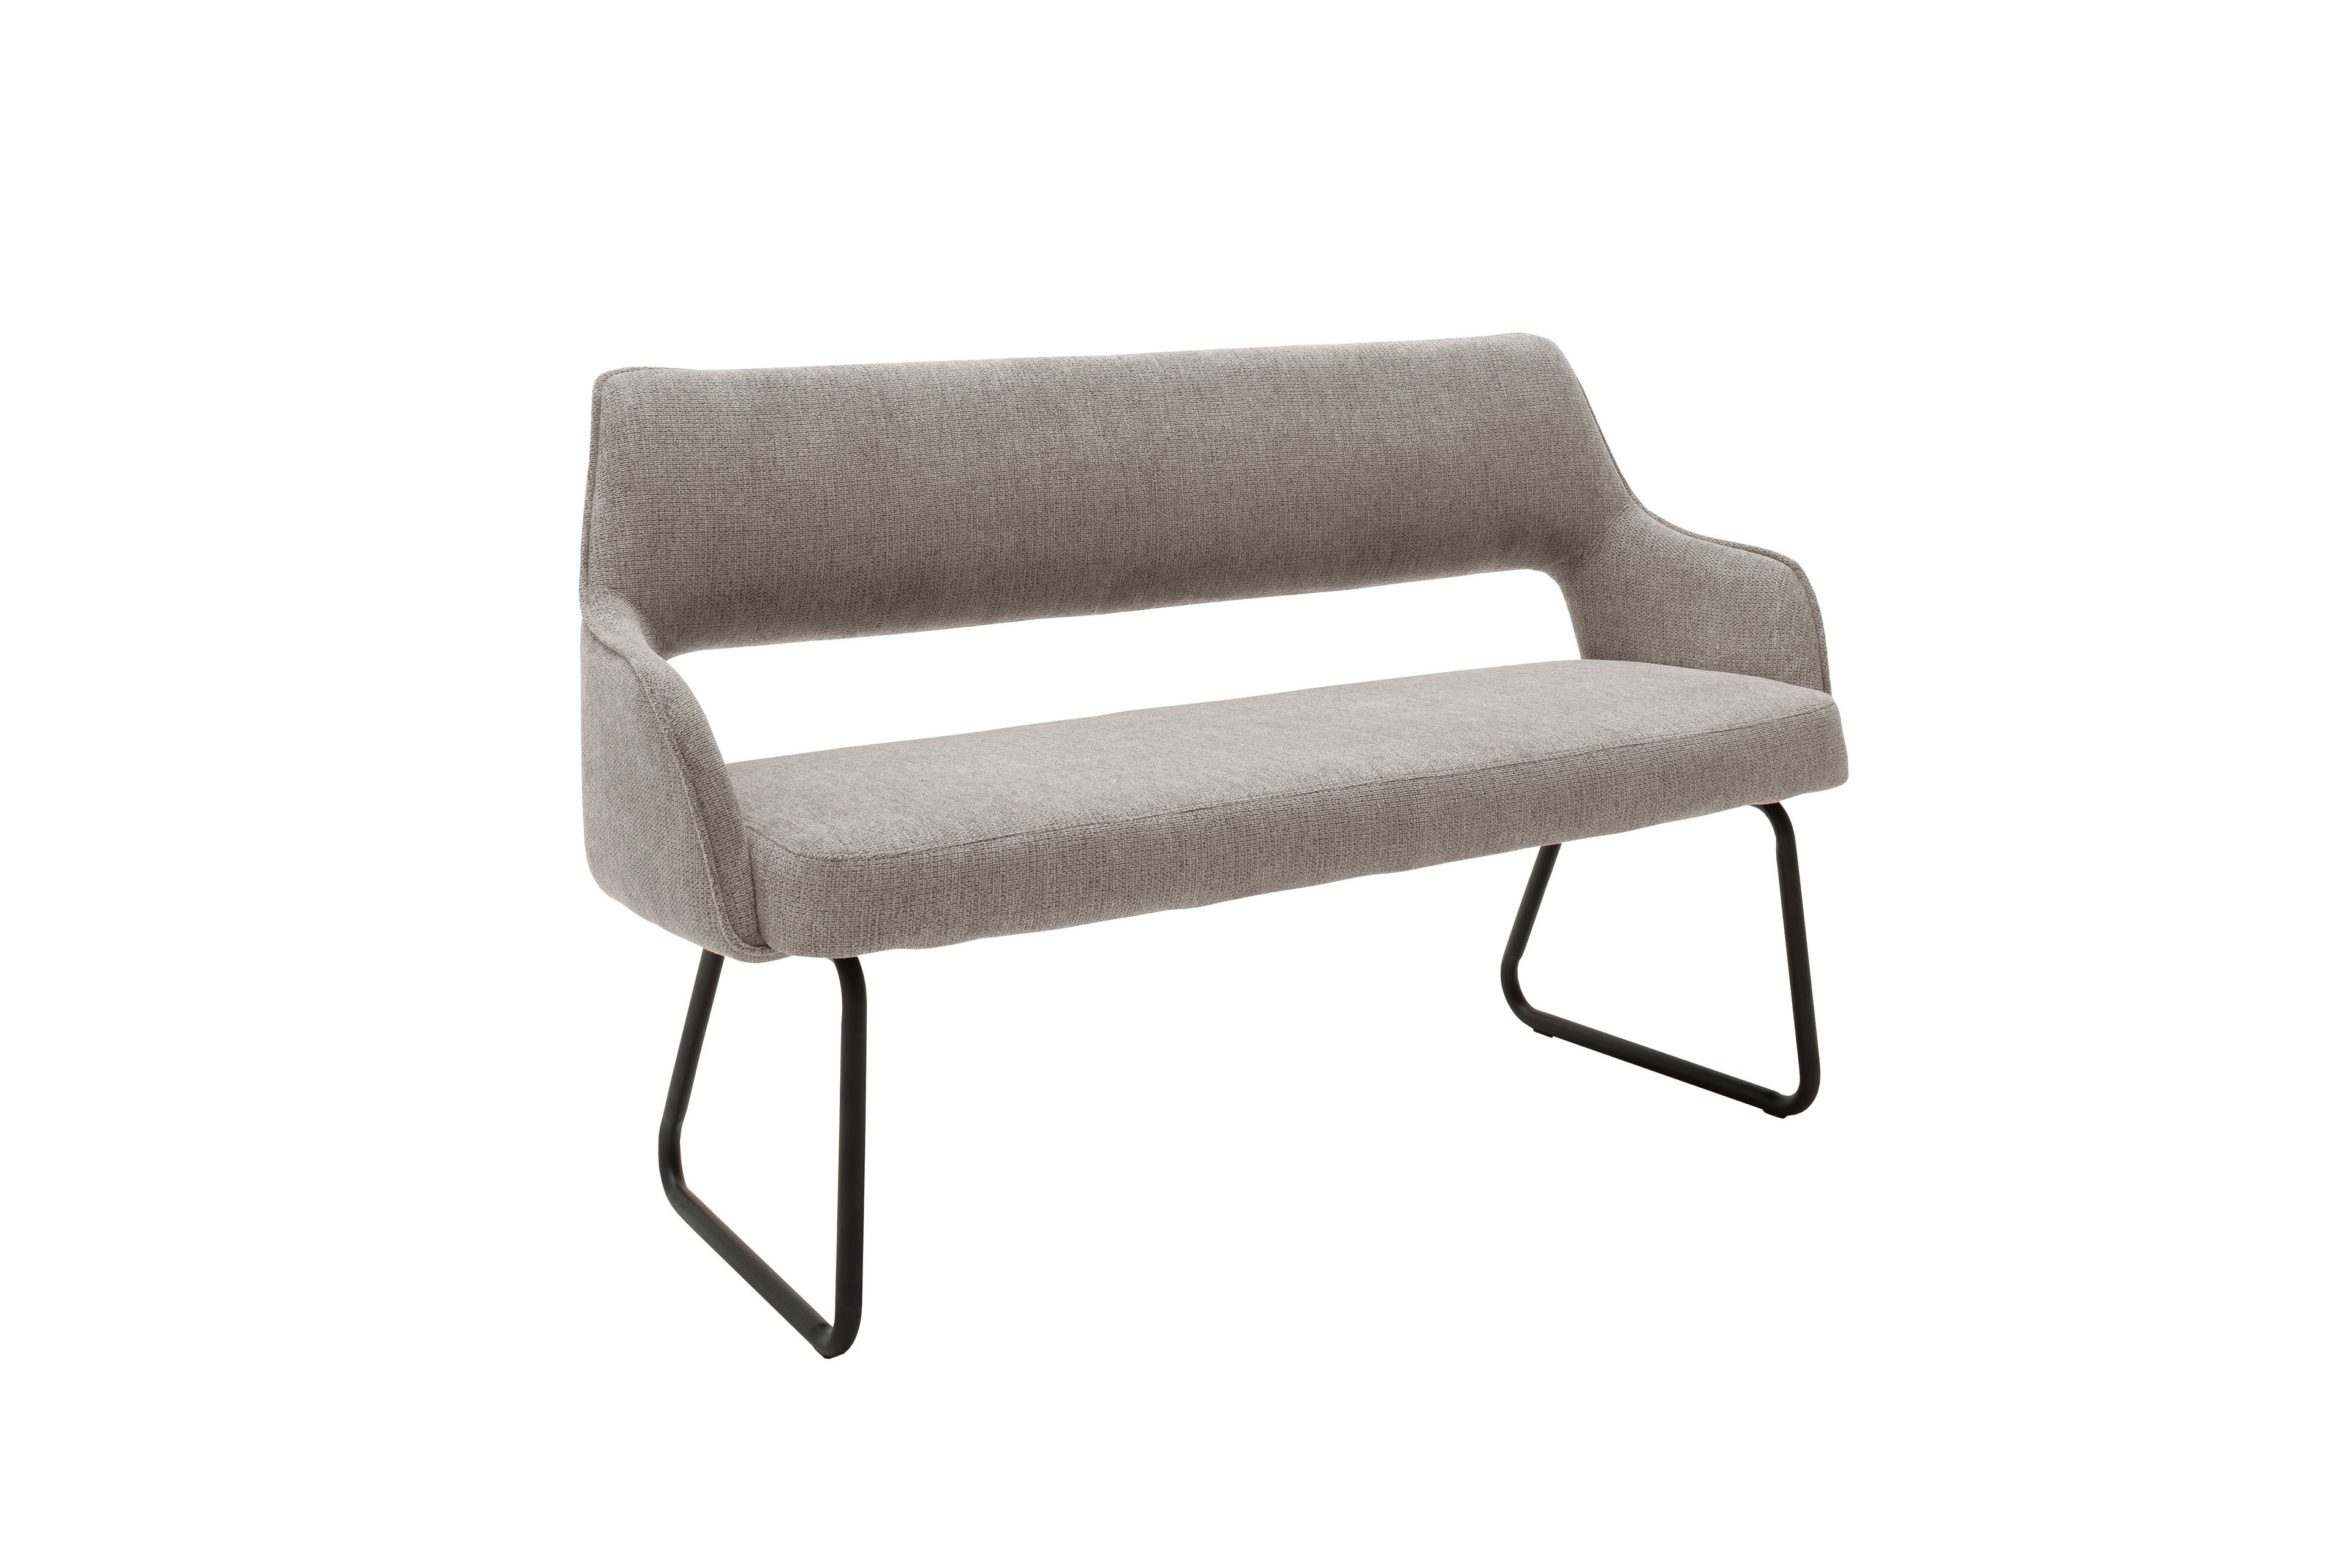 MCA furniture Bank Ihr Möbel schlamm | Bangor Letz - Online-Shop